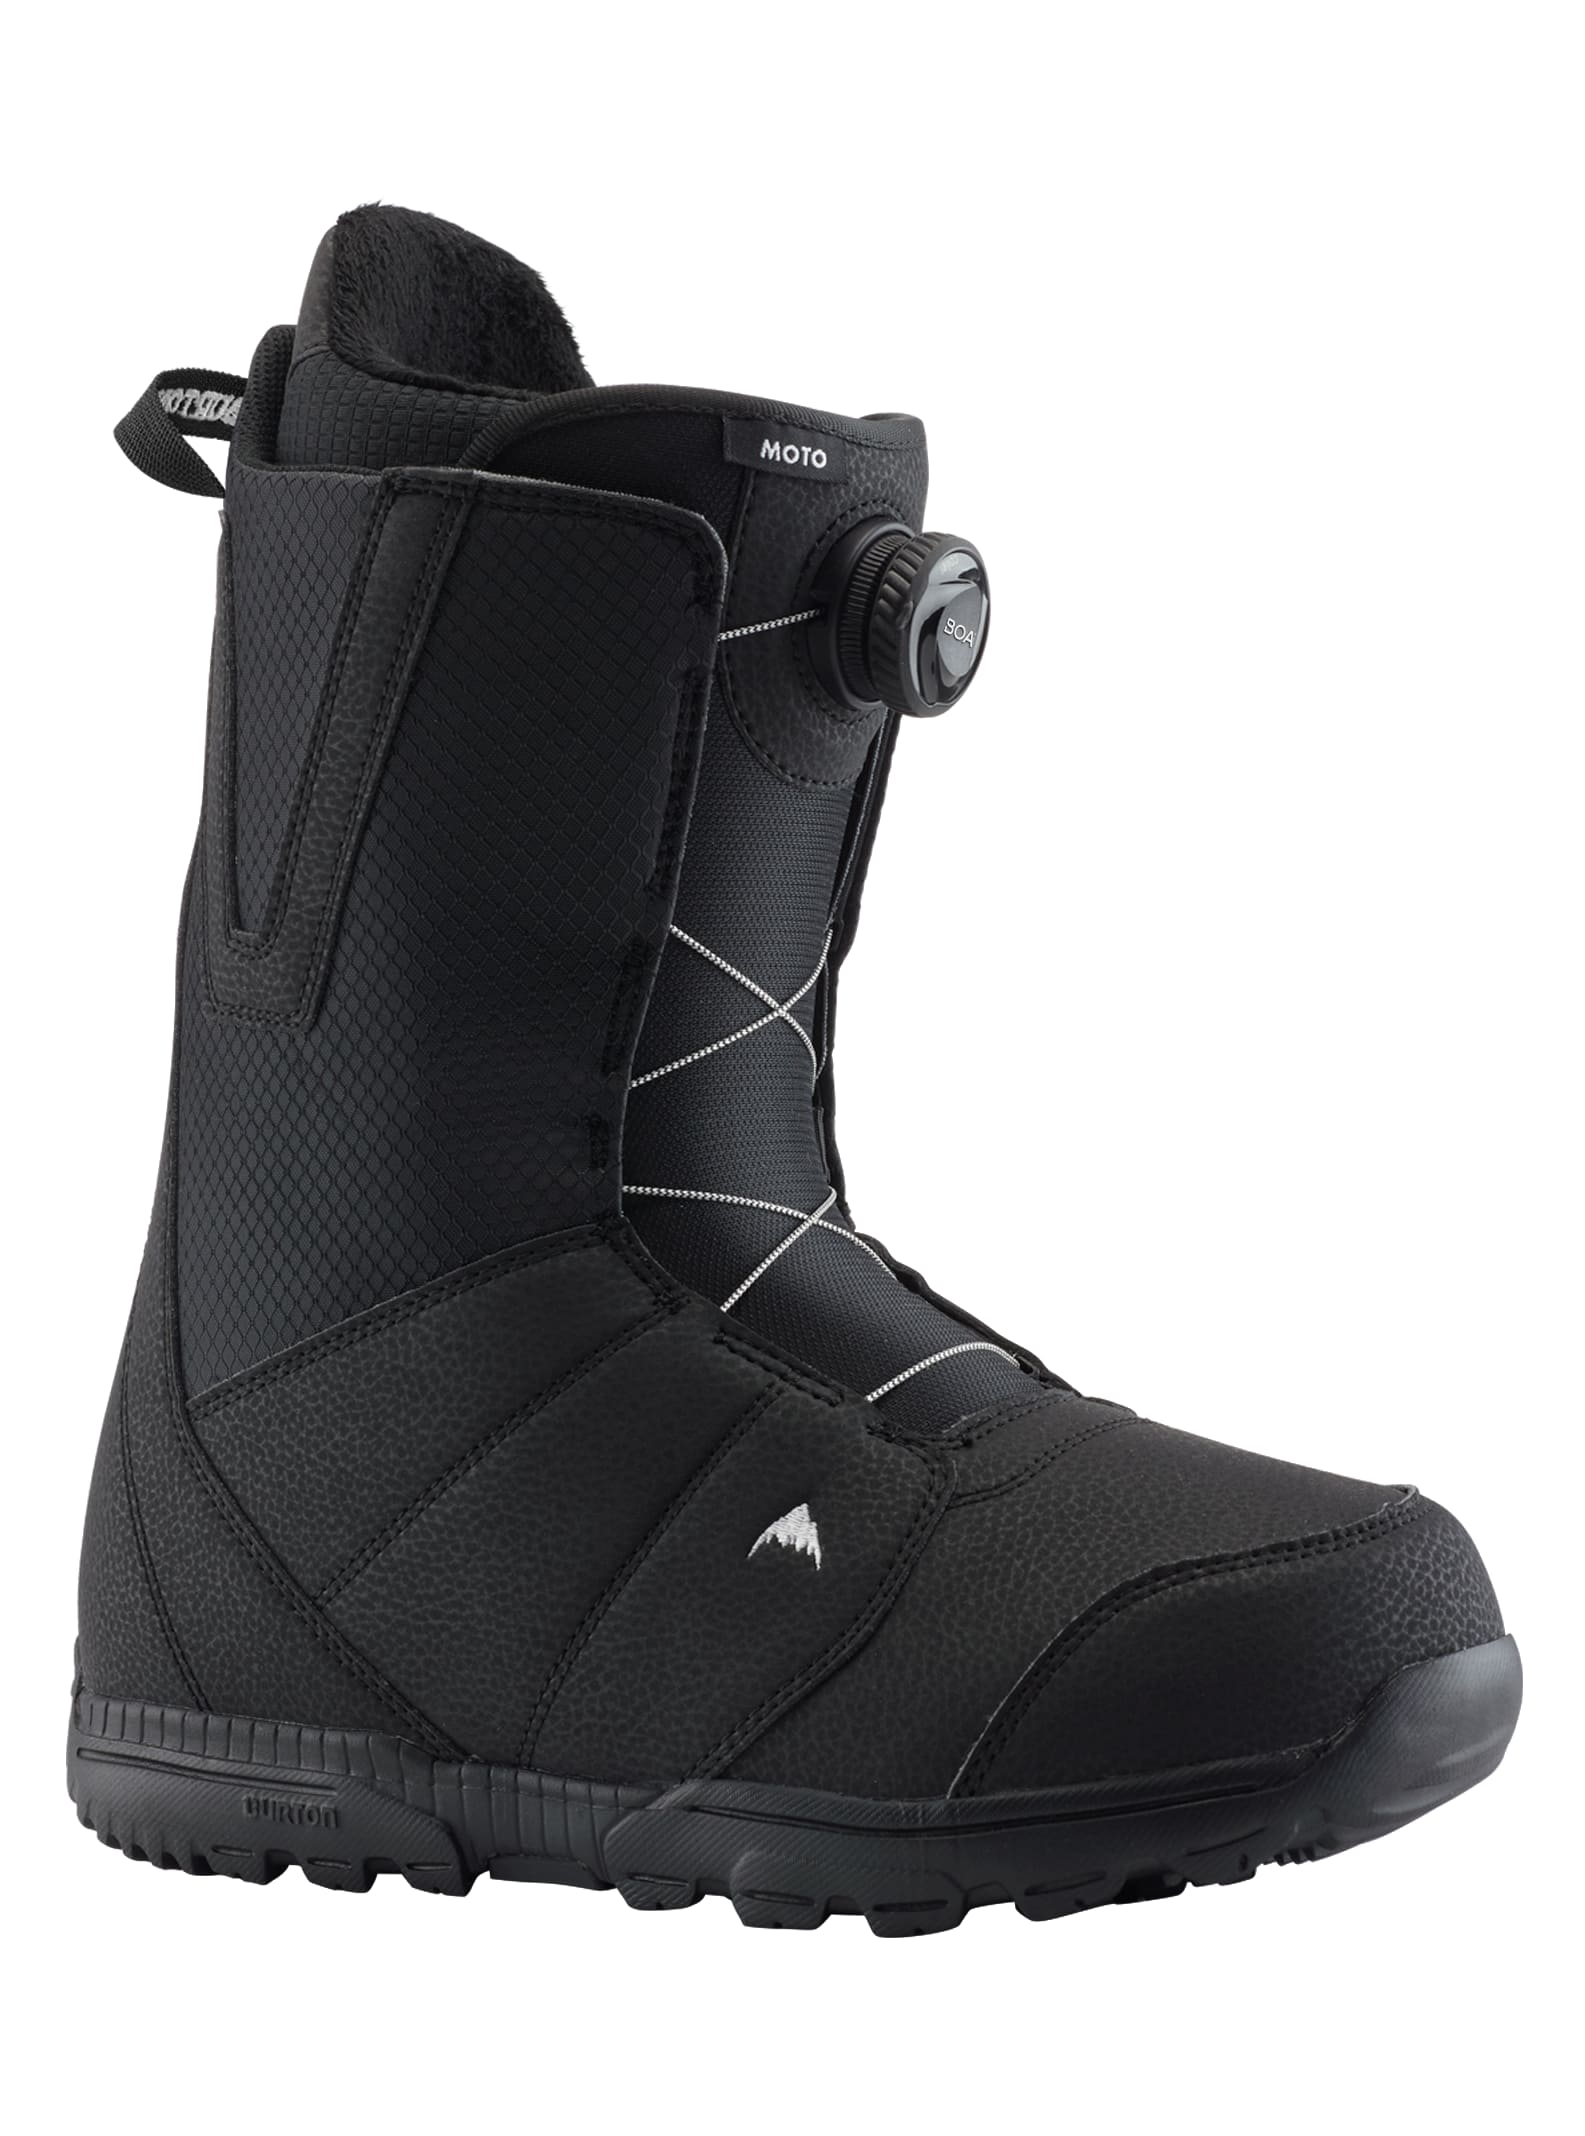 Burton - Boots de snowboard Moto BOA® pour homme, Black, 105